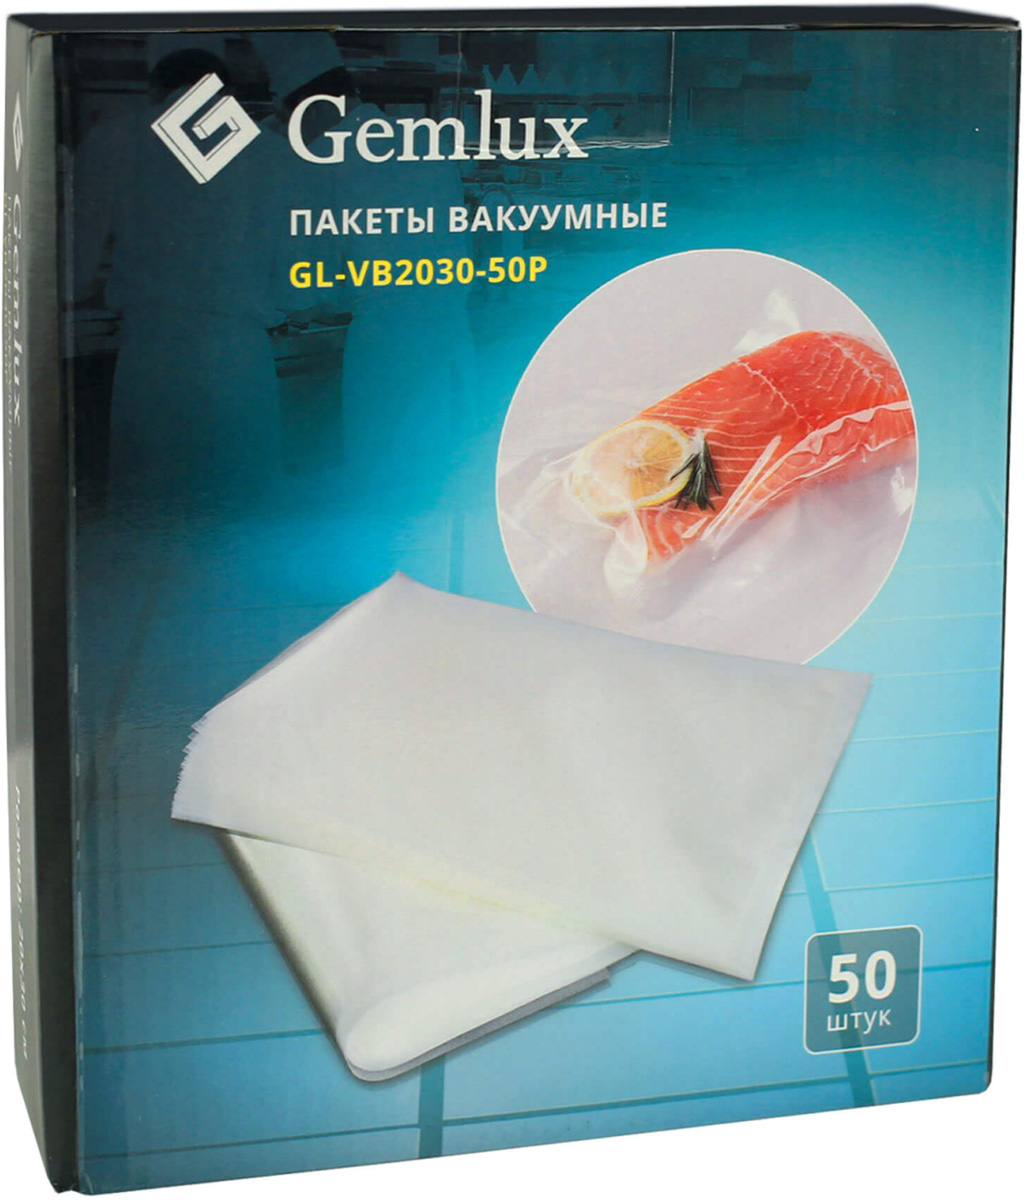 Gemlux GL-VB2030-50P пакеты для вакуумного упаковщика, 50 шт